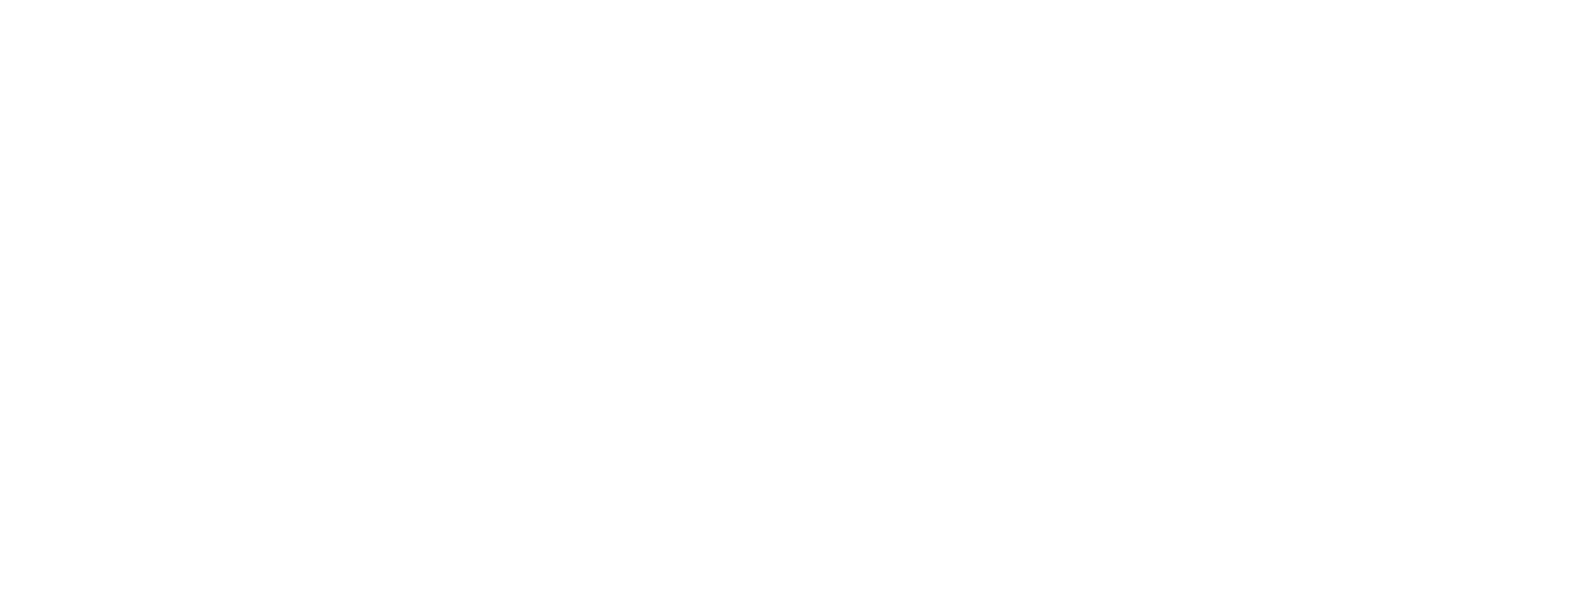 BondBloxx logo grand pour les fonds sombres (PNG transparent)